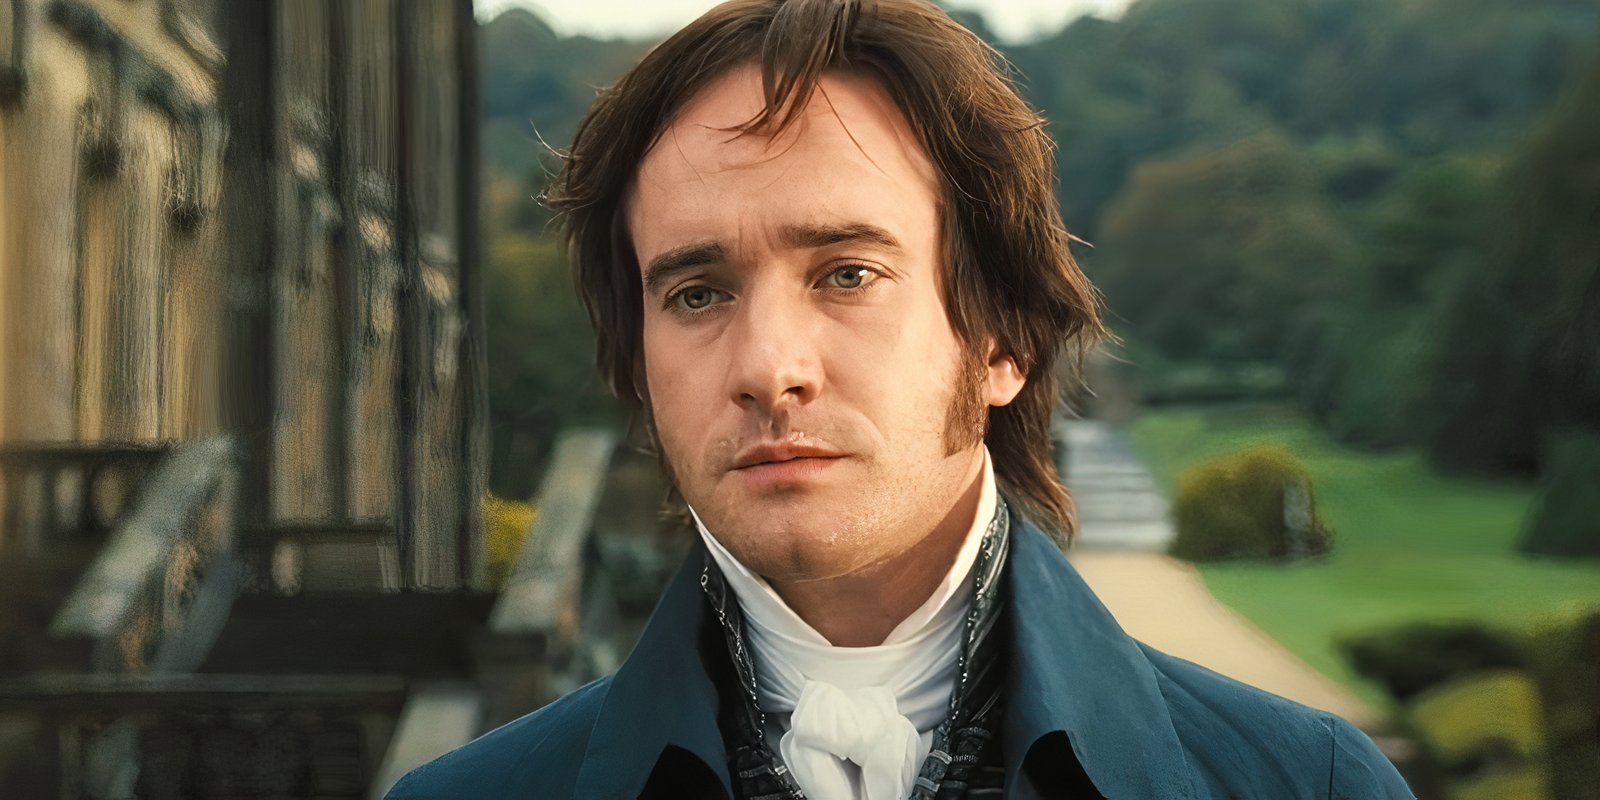 “Me sentí un poco fuera de lugar”: la estrella de Mr. Darcy ofrece una reflexión honesta sobre su papel en Orgullo y prejuicio 20 años después